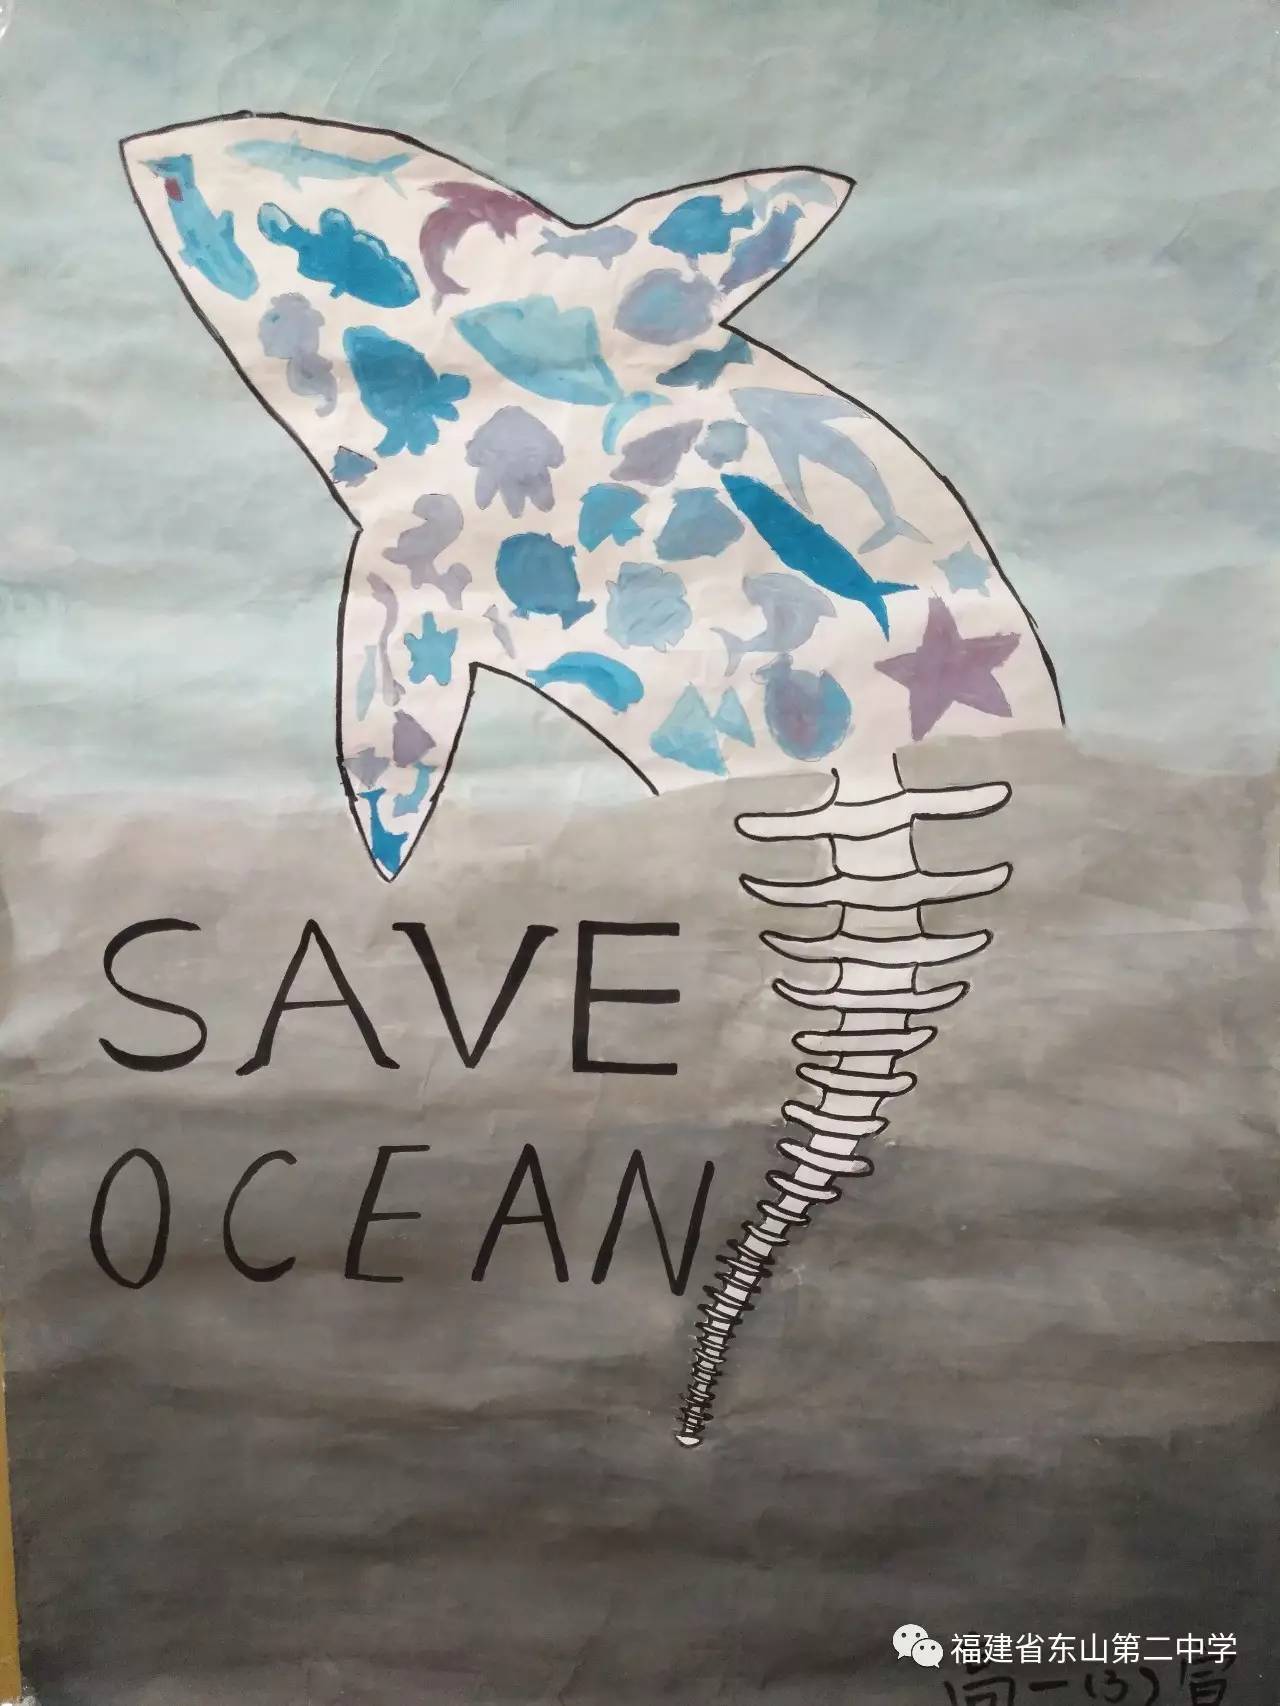 保护海洋的宣传画手绘图片